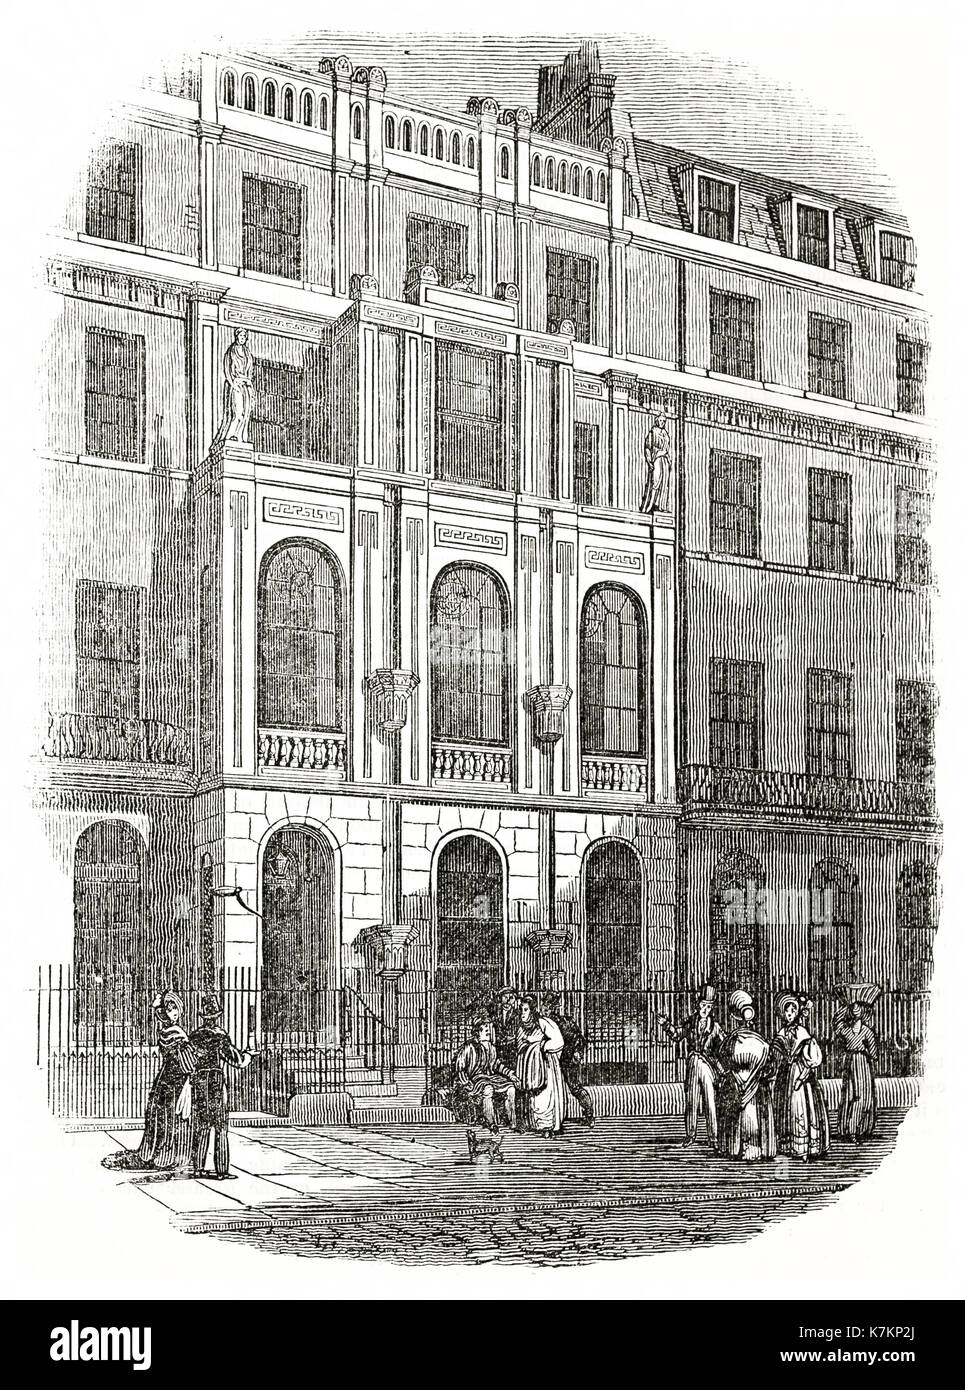 Vue ancienne de Sir John Soane's house in Lincoln's Inn Fields, Londres. Par auteur non identifié, publ. sur le Penny Magazine, Londres, 1837 Banque D'Images